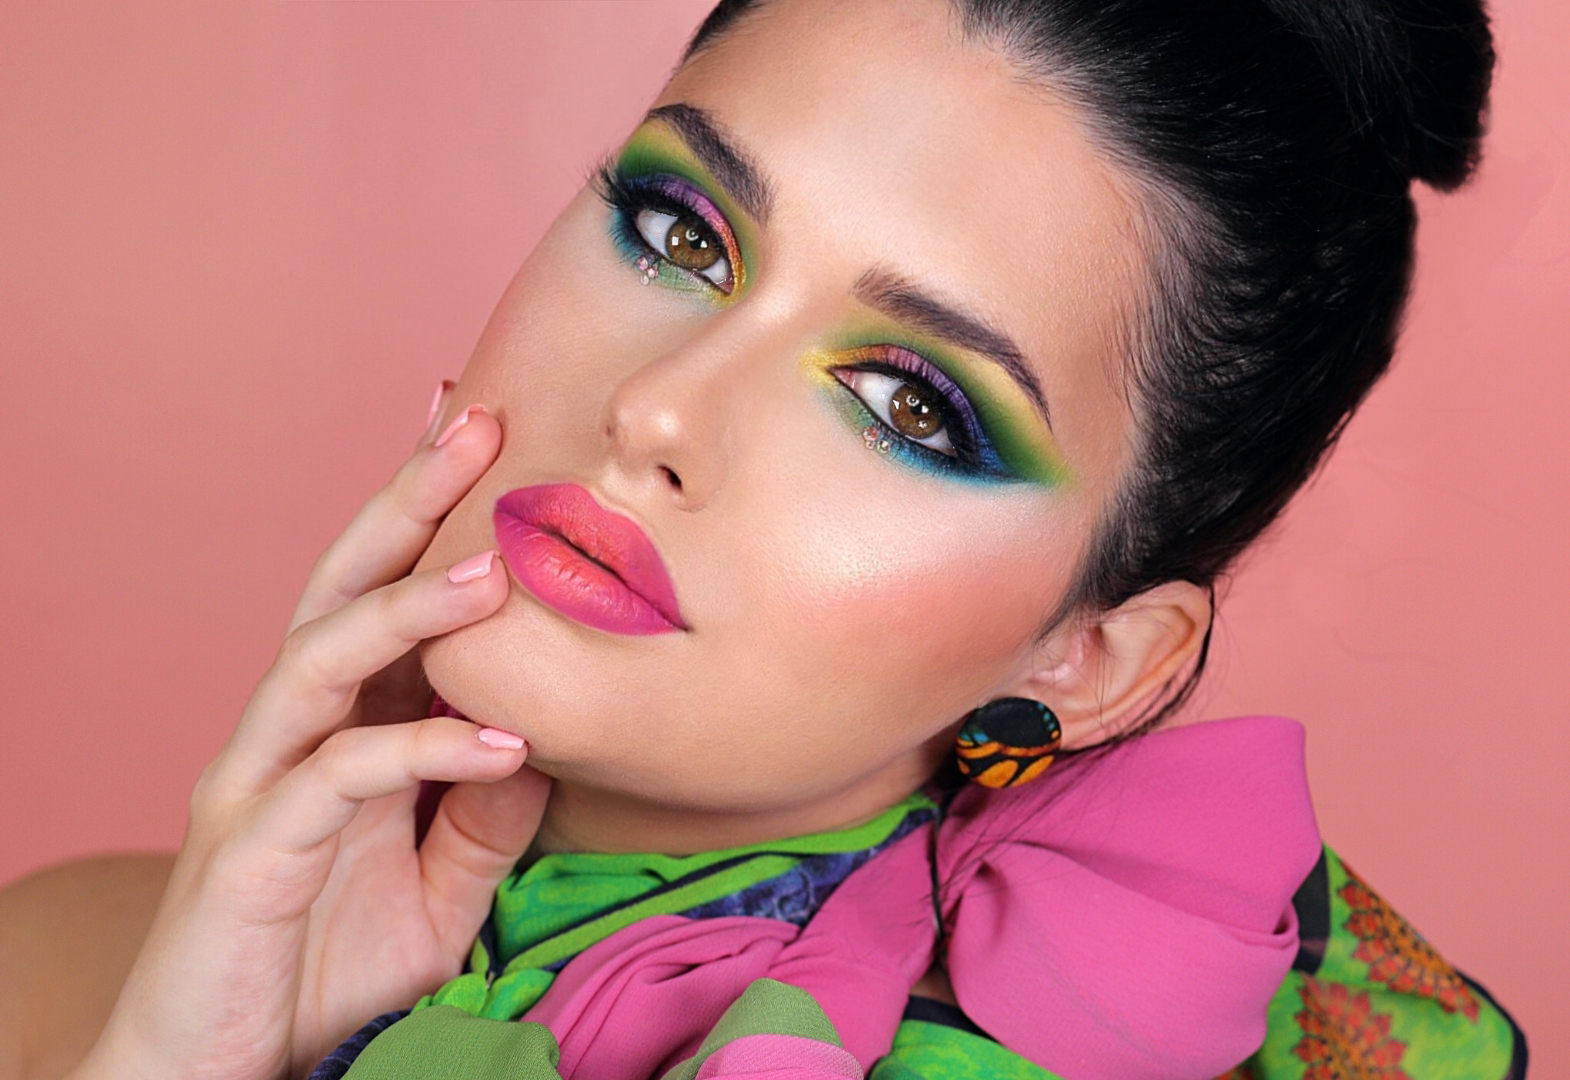 Makeup Courses in Dubai - Top Makeup School in Dubai | Makeup Training Center